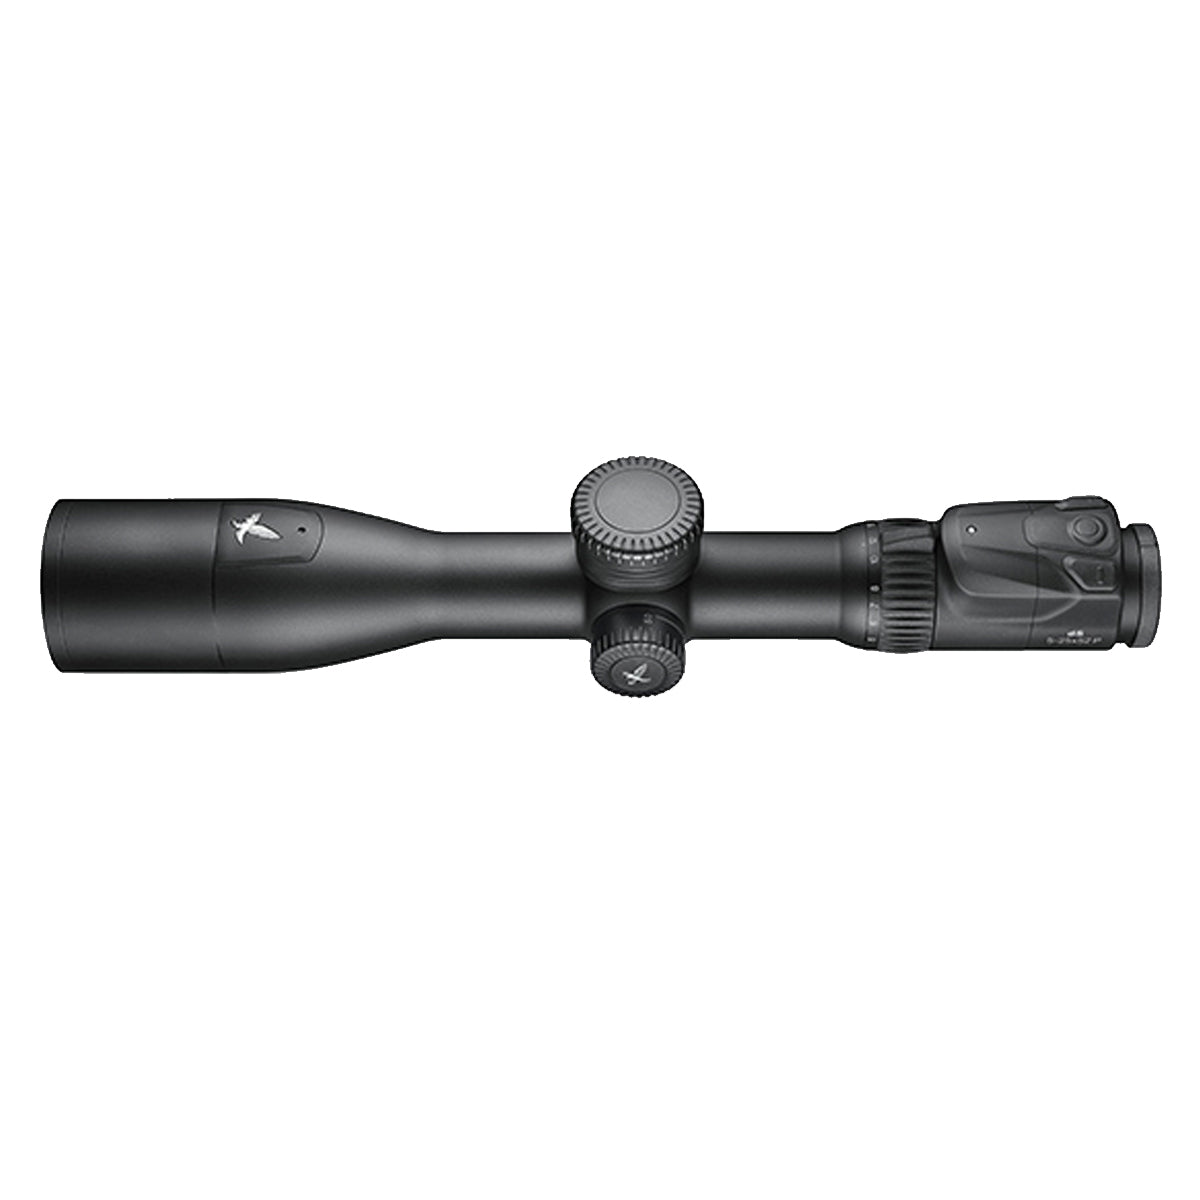 Swarovski dS 5-25x52 Riflescope in Swarovski dS 5-25x52 Riflescope by Swarovski Optik | Optics - goHUNT Shop by GOHUNT | Swarovski Optik - GOHUNT Shop